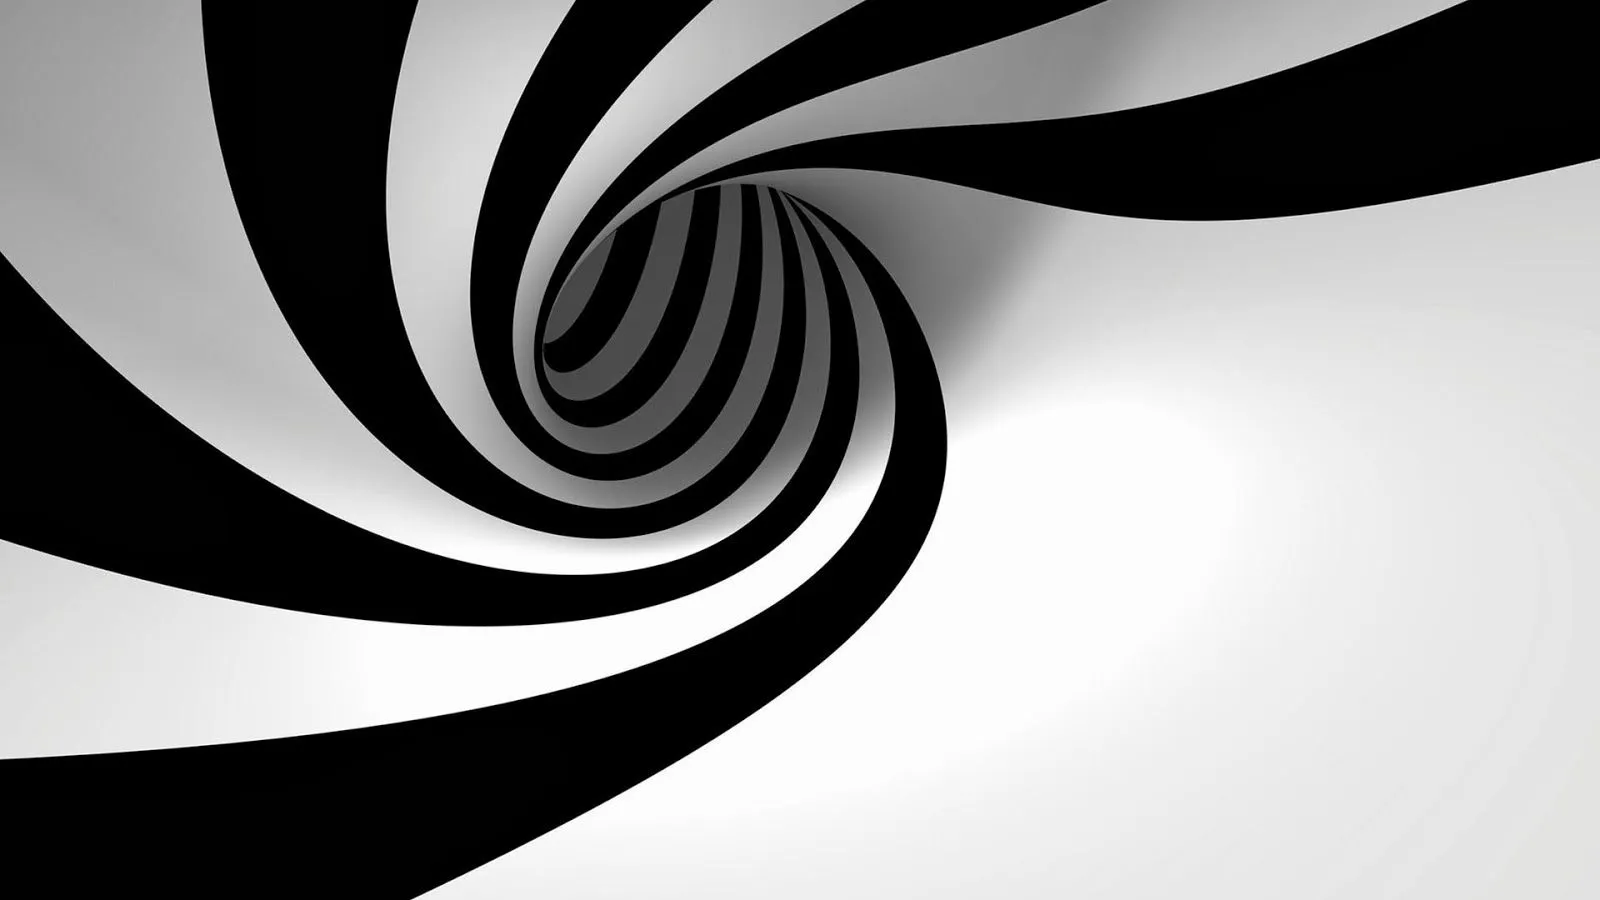 Fondo de Pantalla Abstracto Tunel blanco y negro | Imagenes.